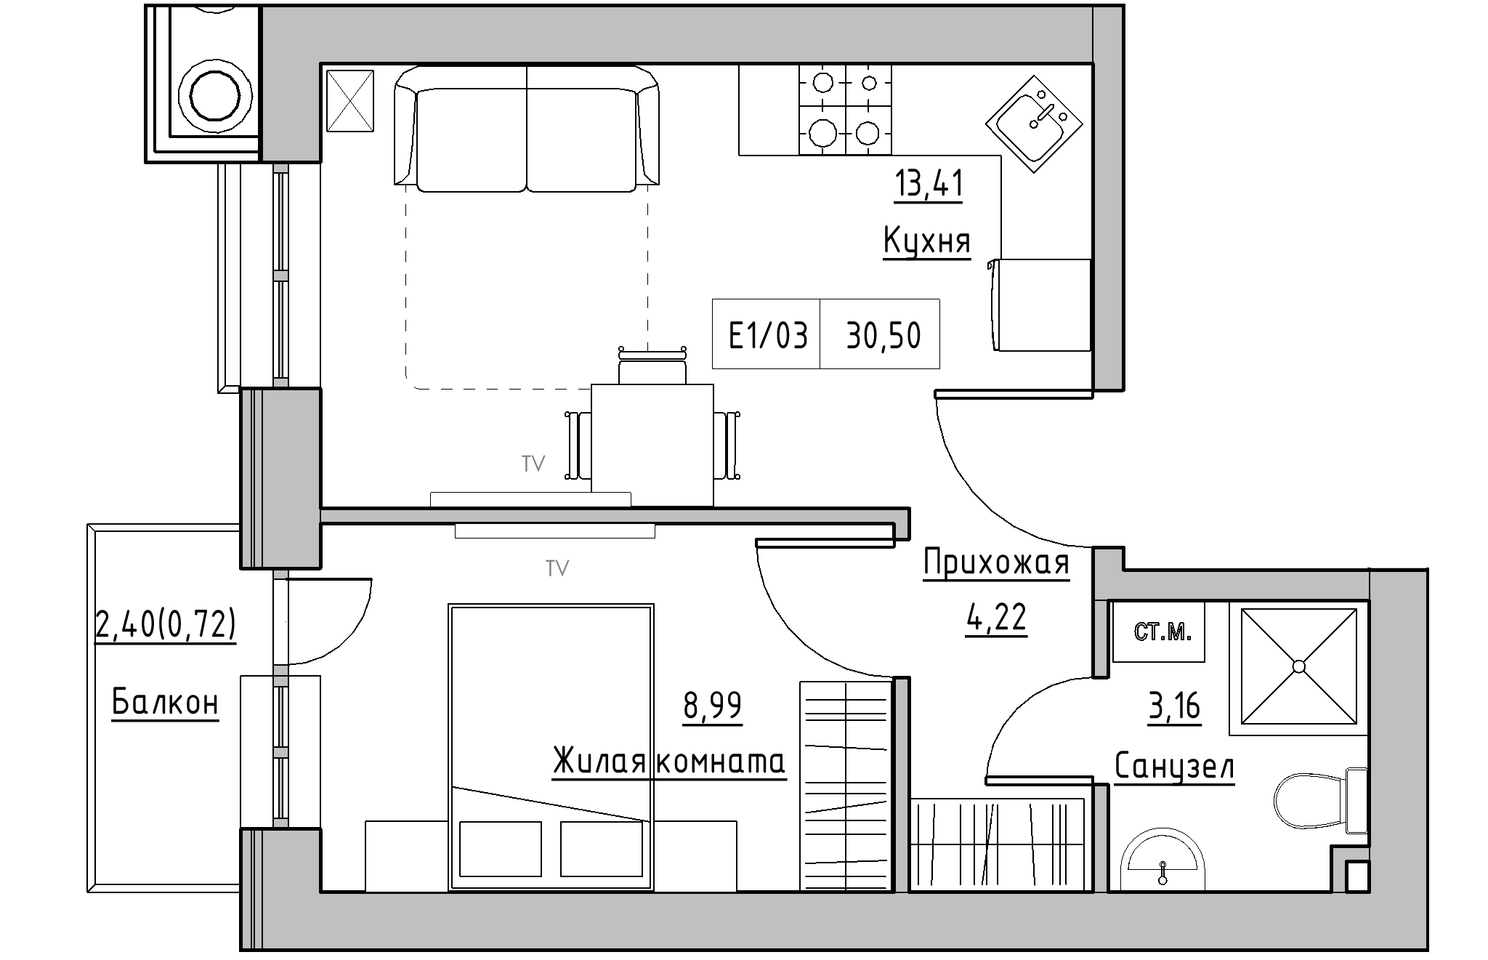 Планировка 1-к квартира площей 30.5м2, KS-010-03/0012.